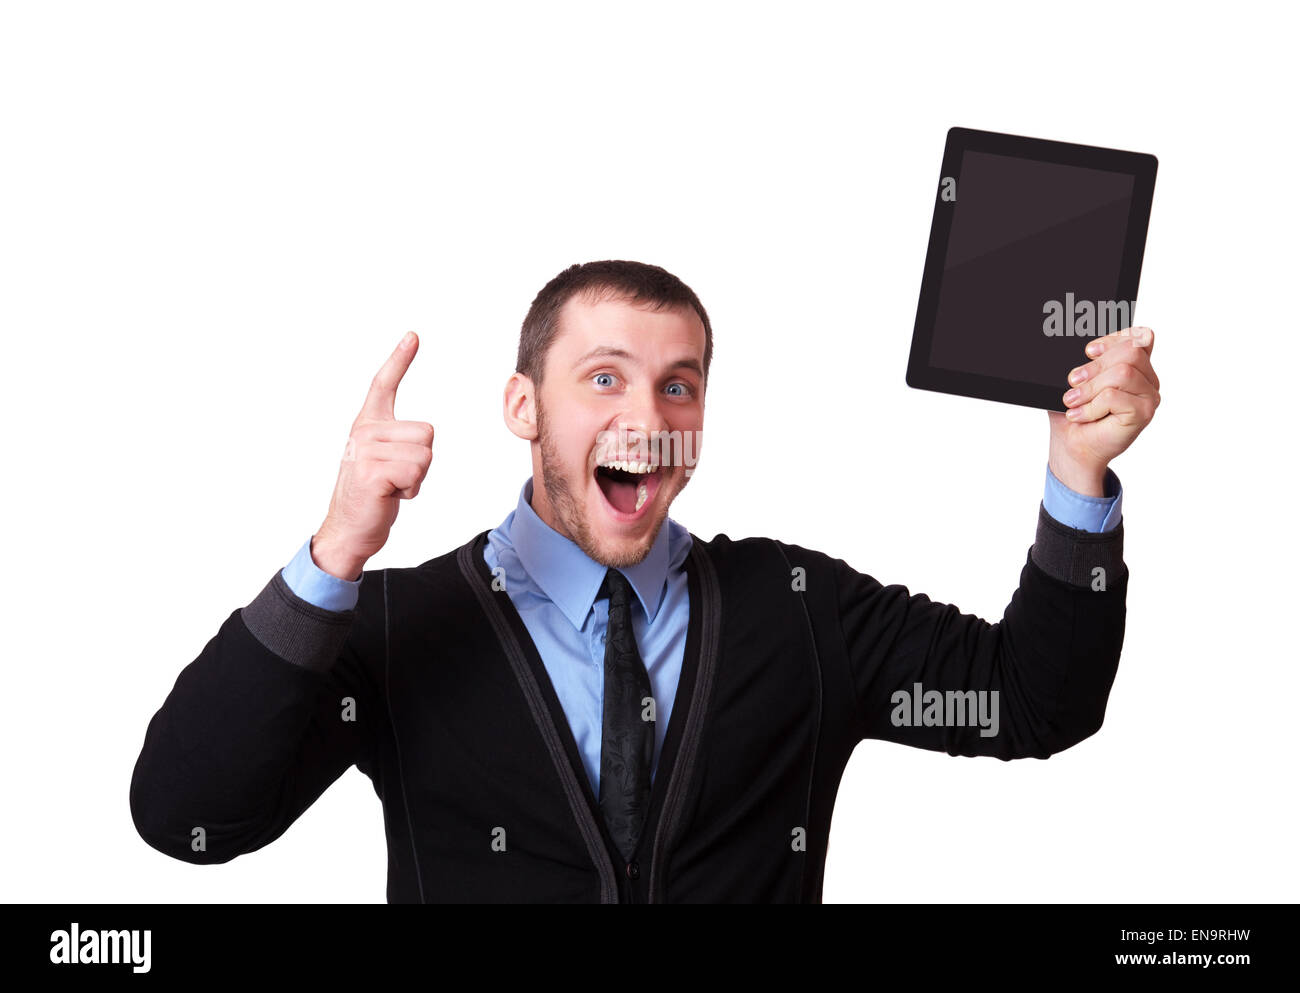 Homme heureux avec une tablette dans sa main et doigt soulevé, isolated on white Banque D'Images